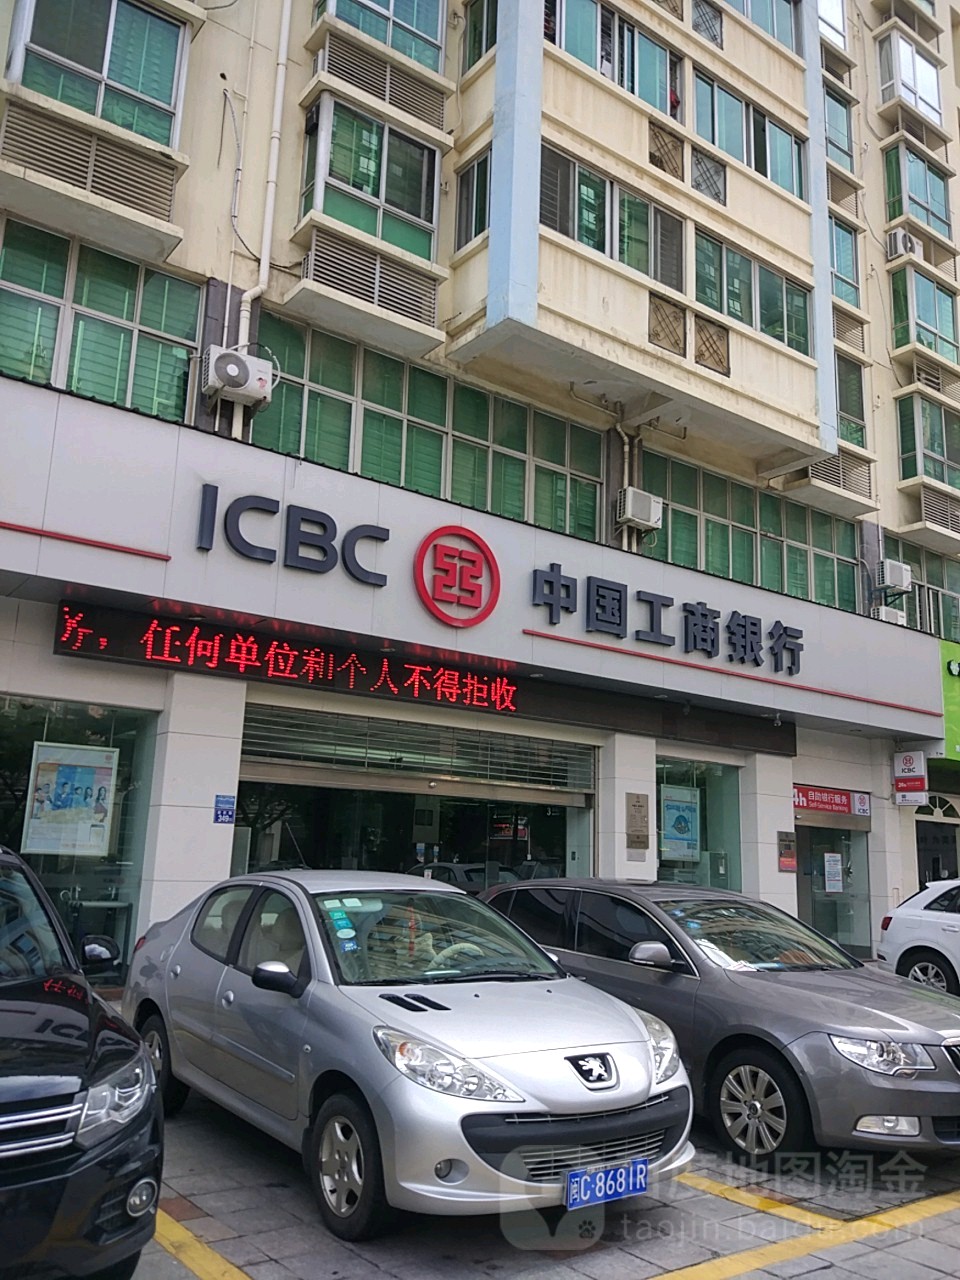 中國工商銀行(晉江城關支行)